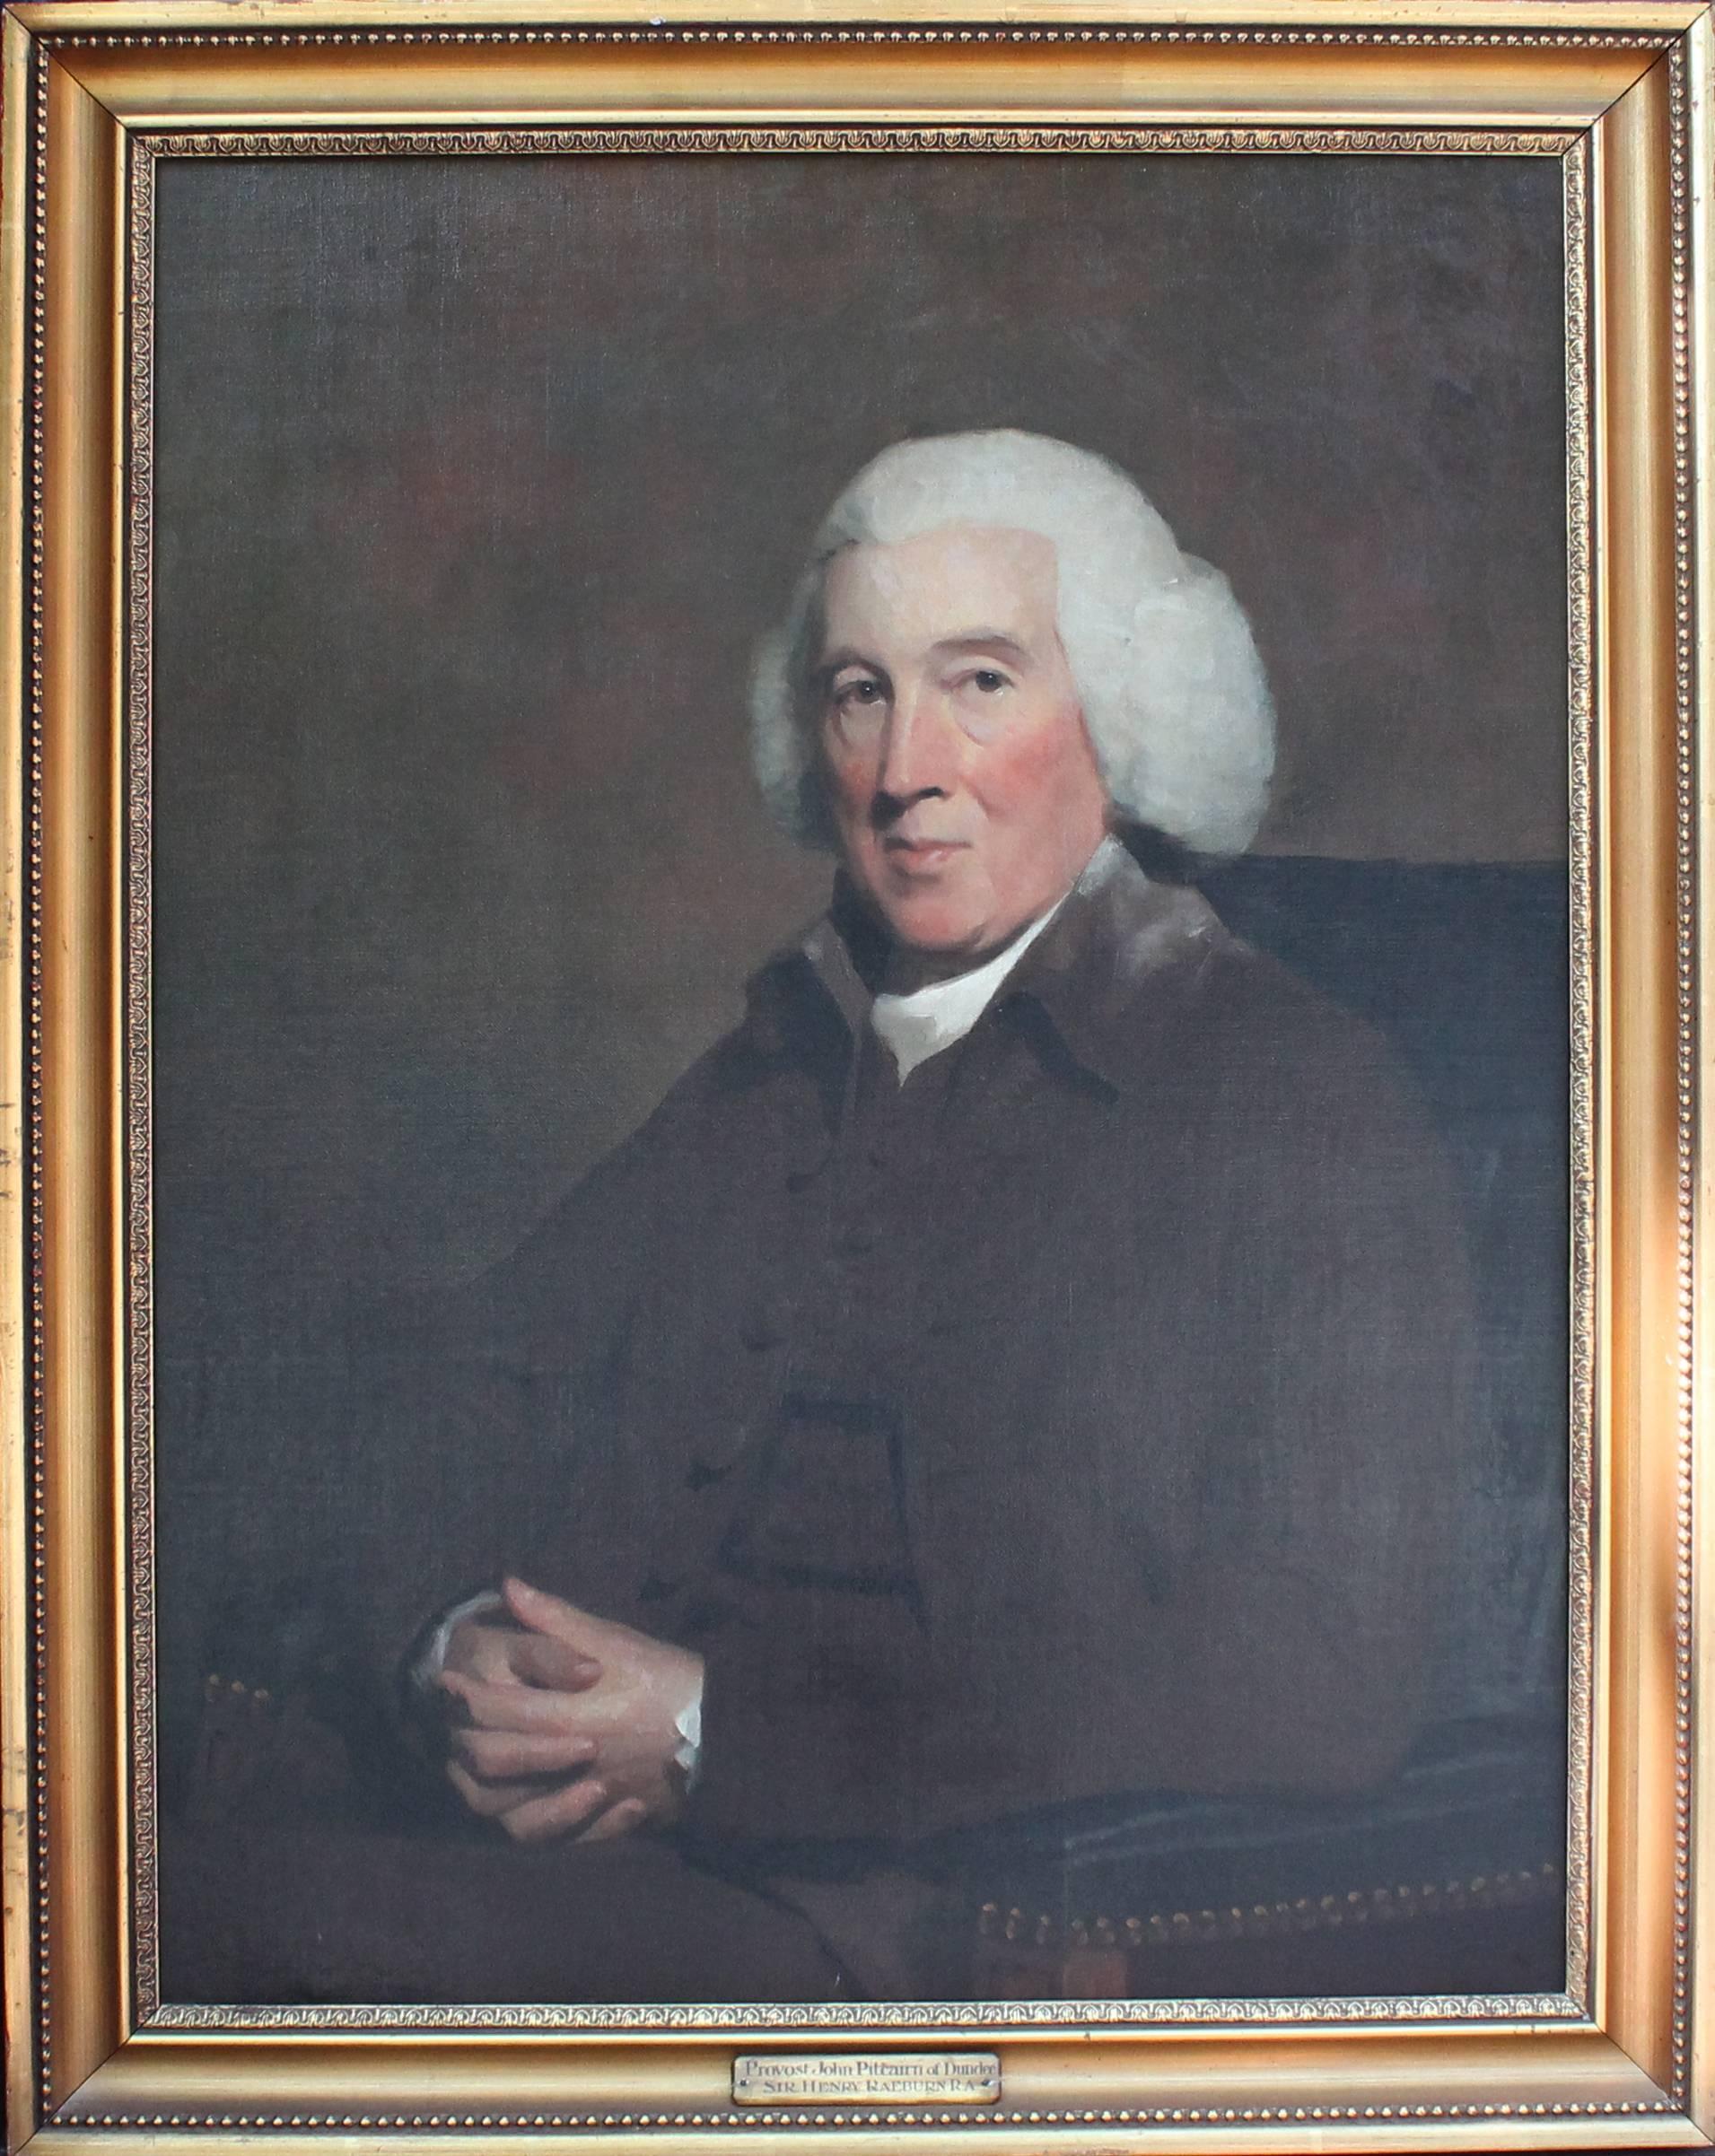 Ölgemälde des Provosts John Pitcairn aus Dundee, 18. Jahrhundert, Porträt – Painting von Sir Henry Raeburn